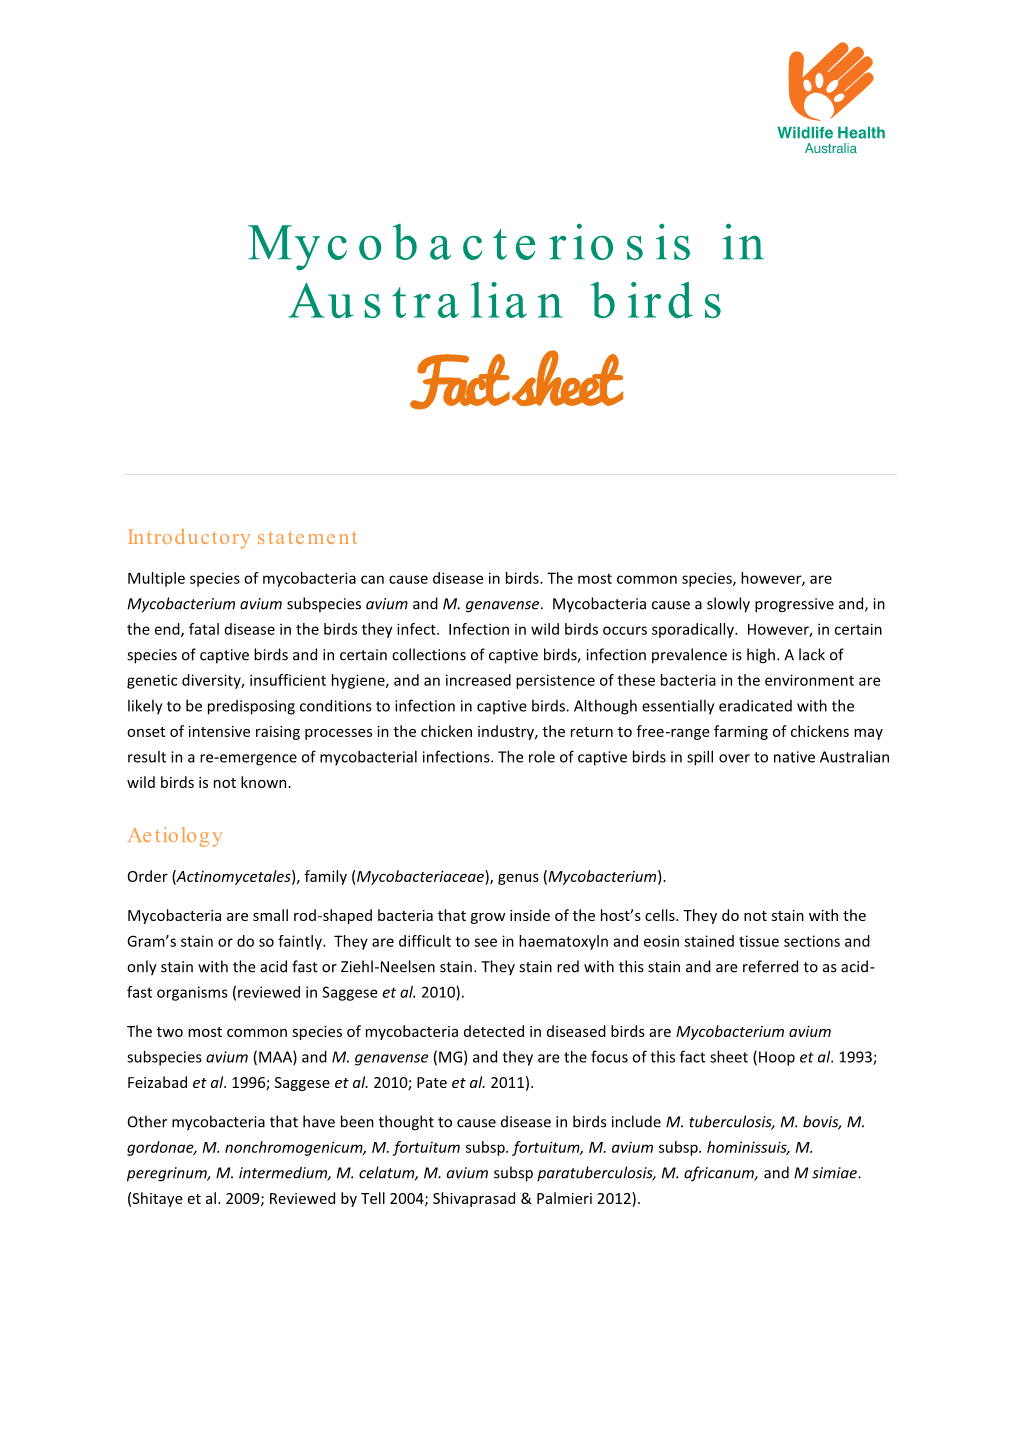 Mycobacteriosis in Australian Birds Dec 2013